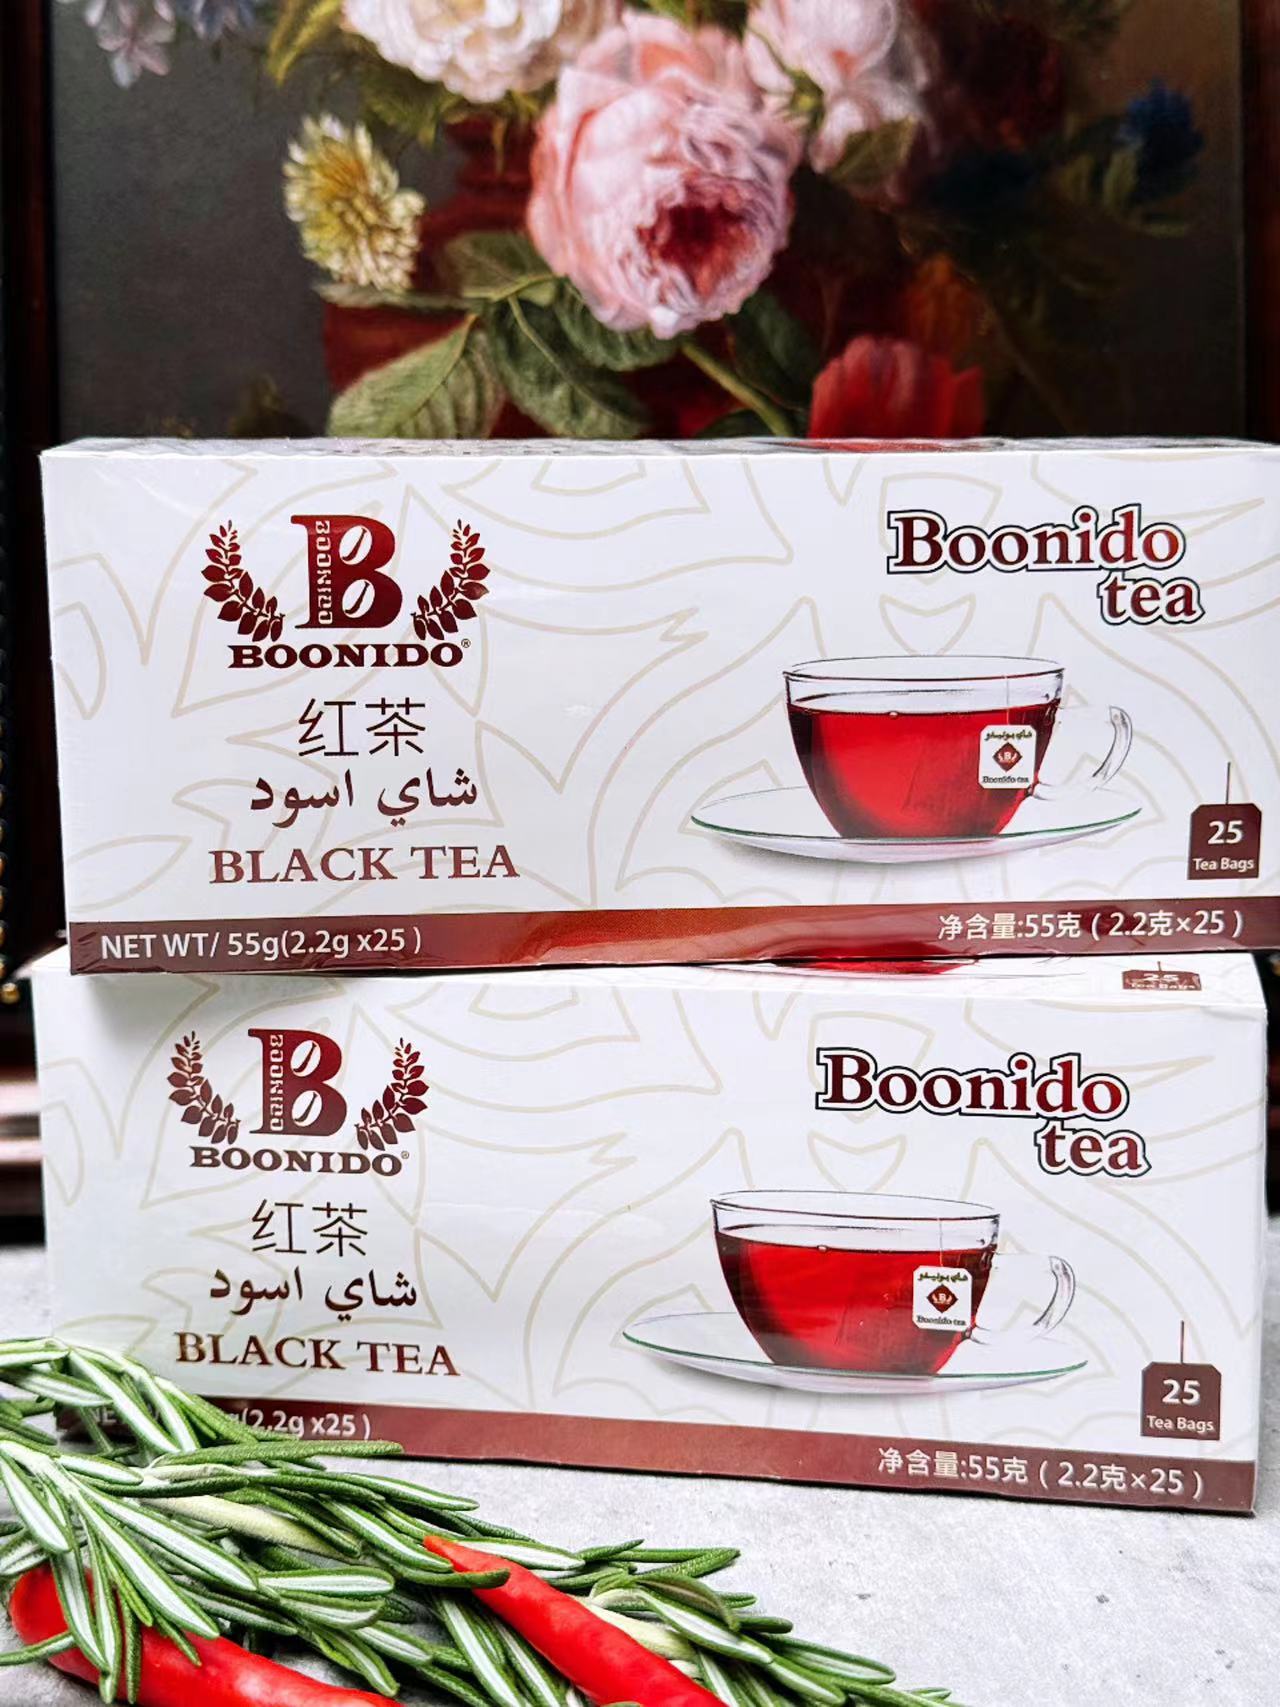 BLACK TEA 阿拉伯红茶肯尼亚风味黑茶 红茶 奶茶原料 早茶 茶包